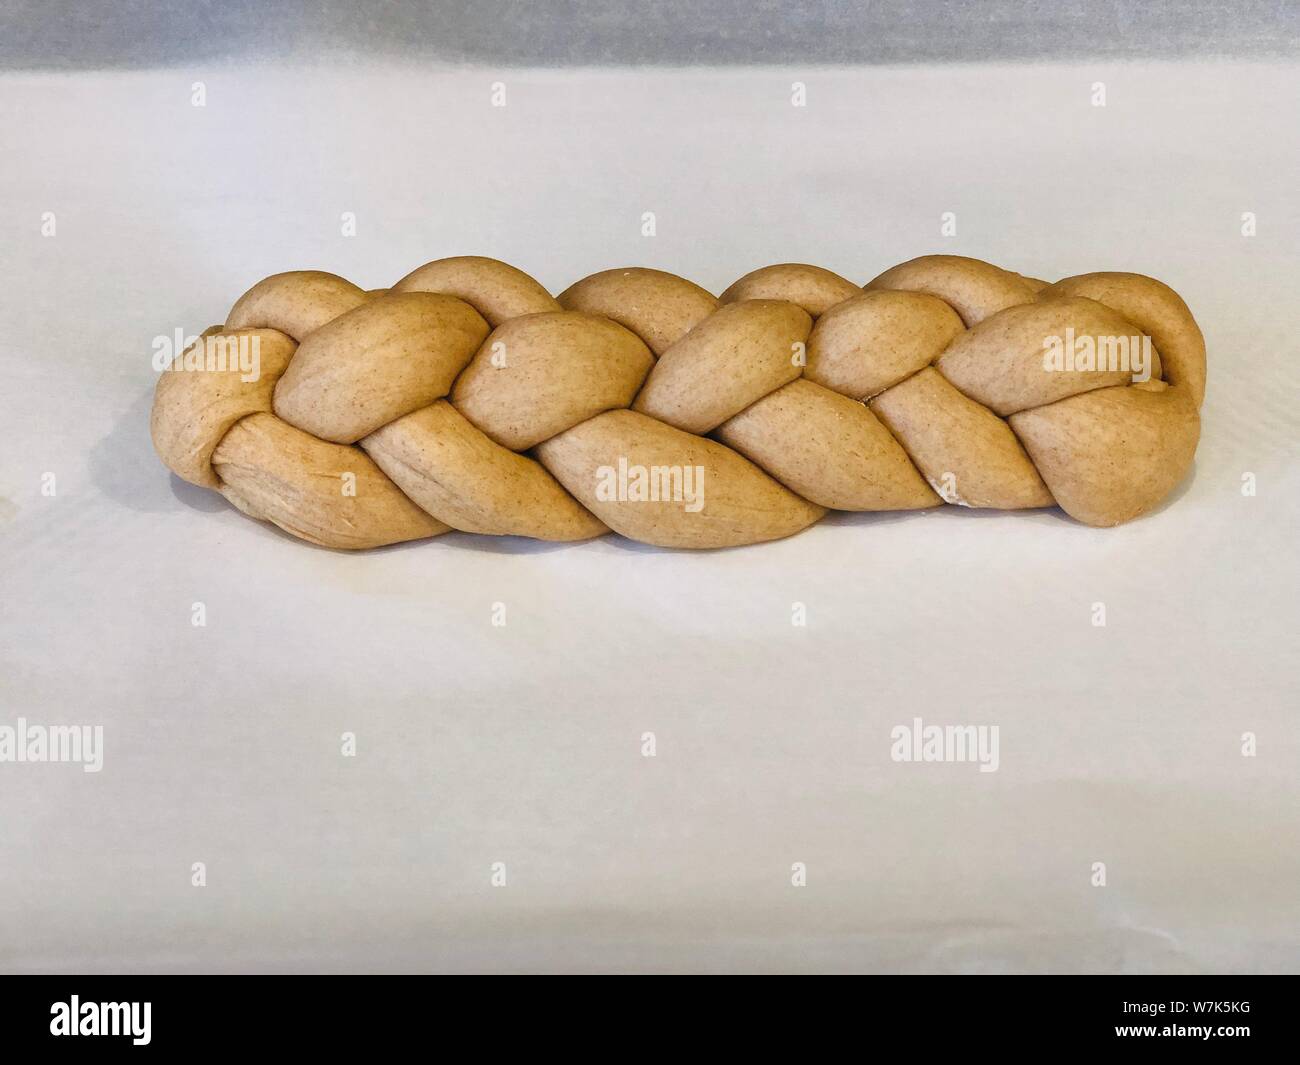 Sichern hausgemachte challah Brot geflochtene Teig vor seinem auf einem Trägermaterial Papier gesichert Stockfoto